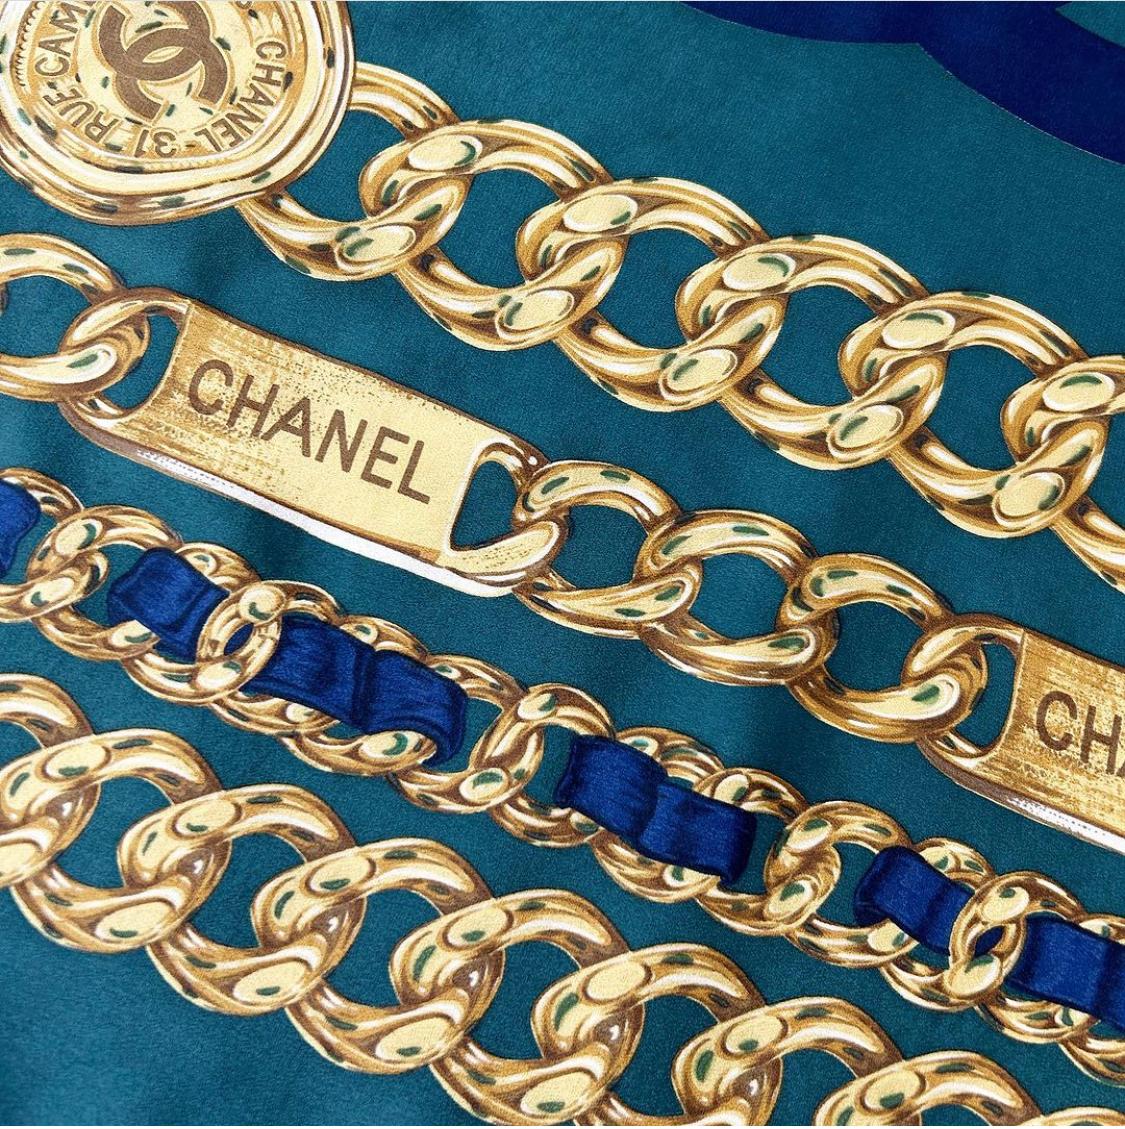 Cette écharpe vintage Chanel est confectionnée en 100 % soie vert émeraude et présente les maillons de chaîne dorés emblématiques de Chanel ainsi qu'un CC bleu marine au centre et des bords roulés cousus à la main. Mesure 34 x 33 pouces. Fabriquées